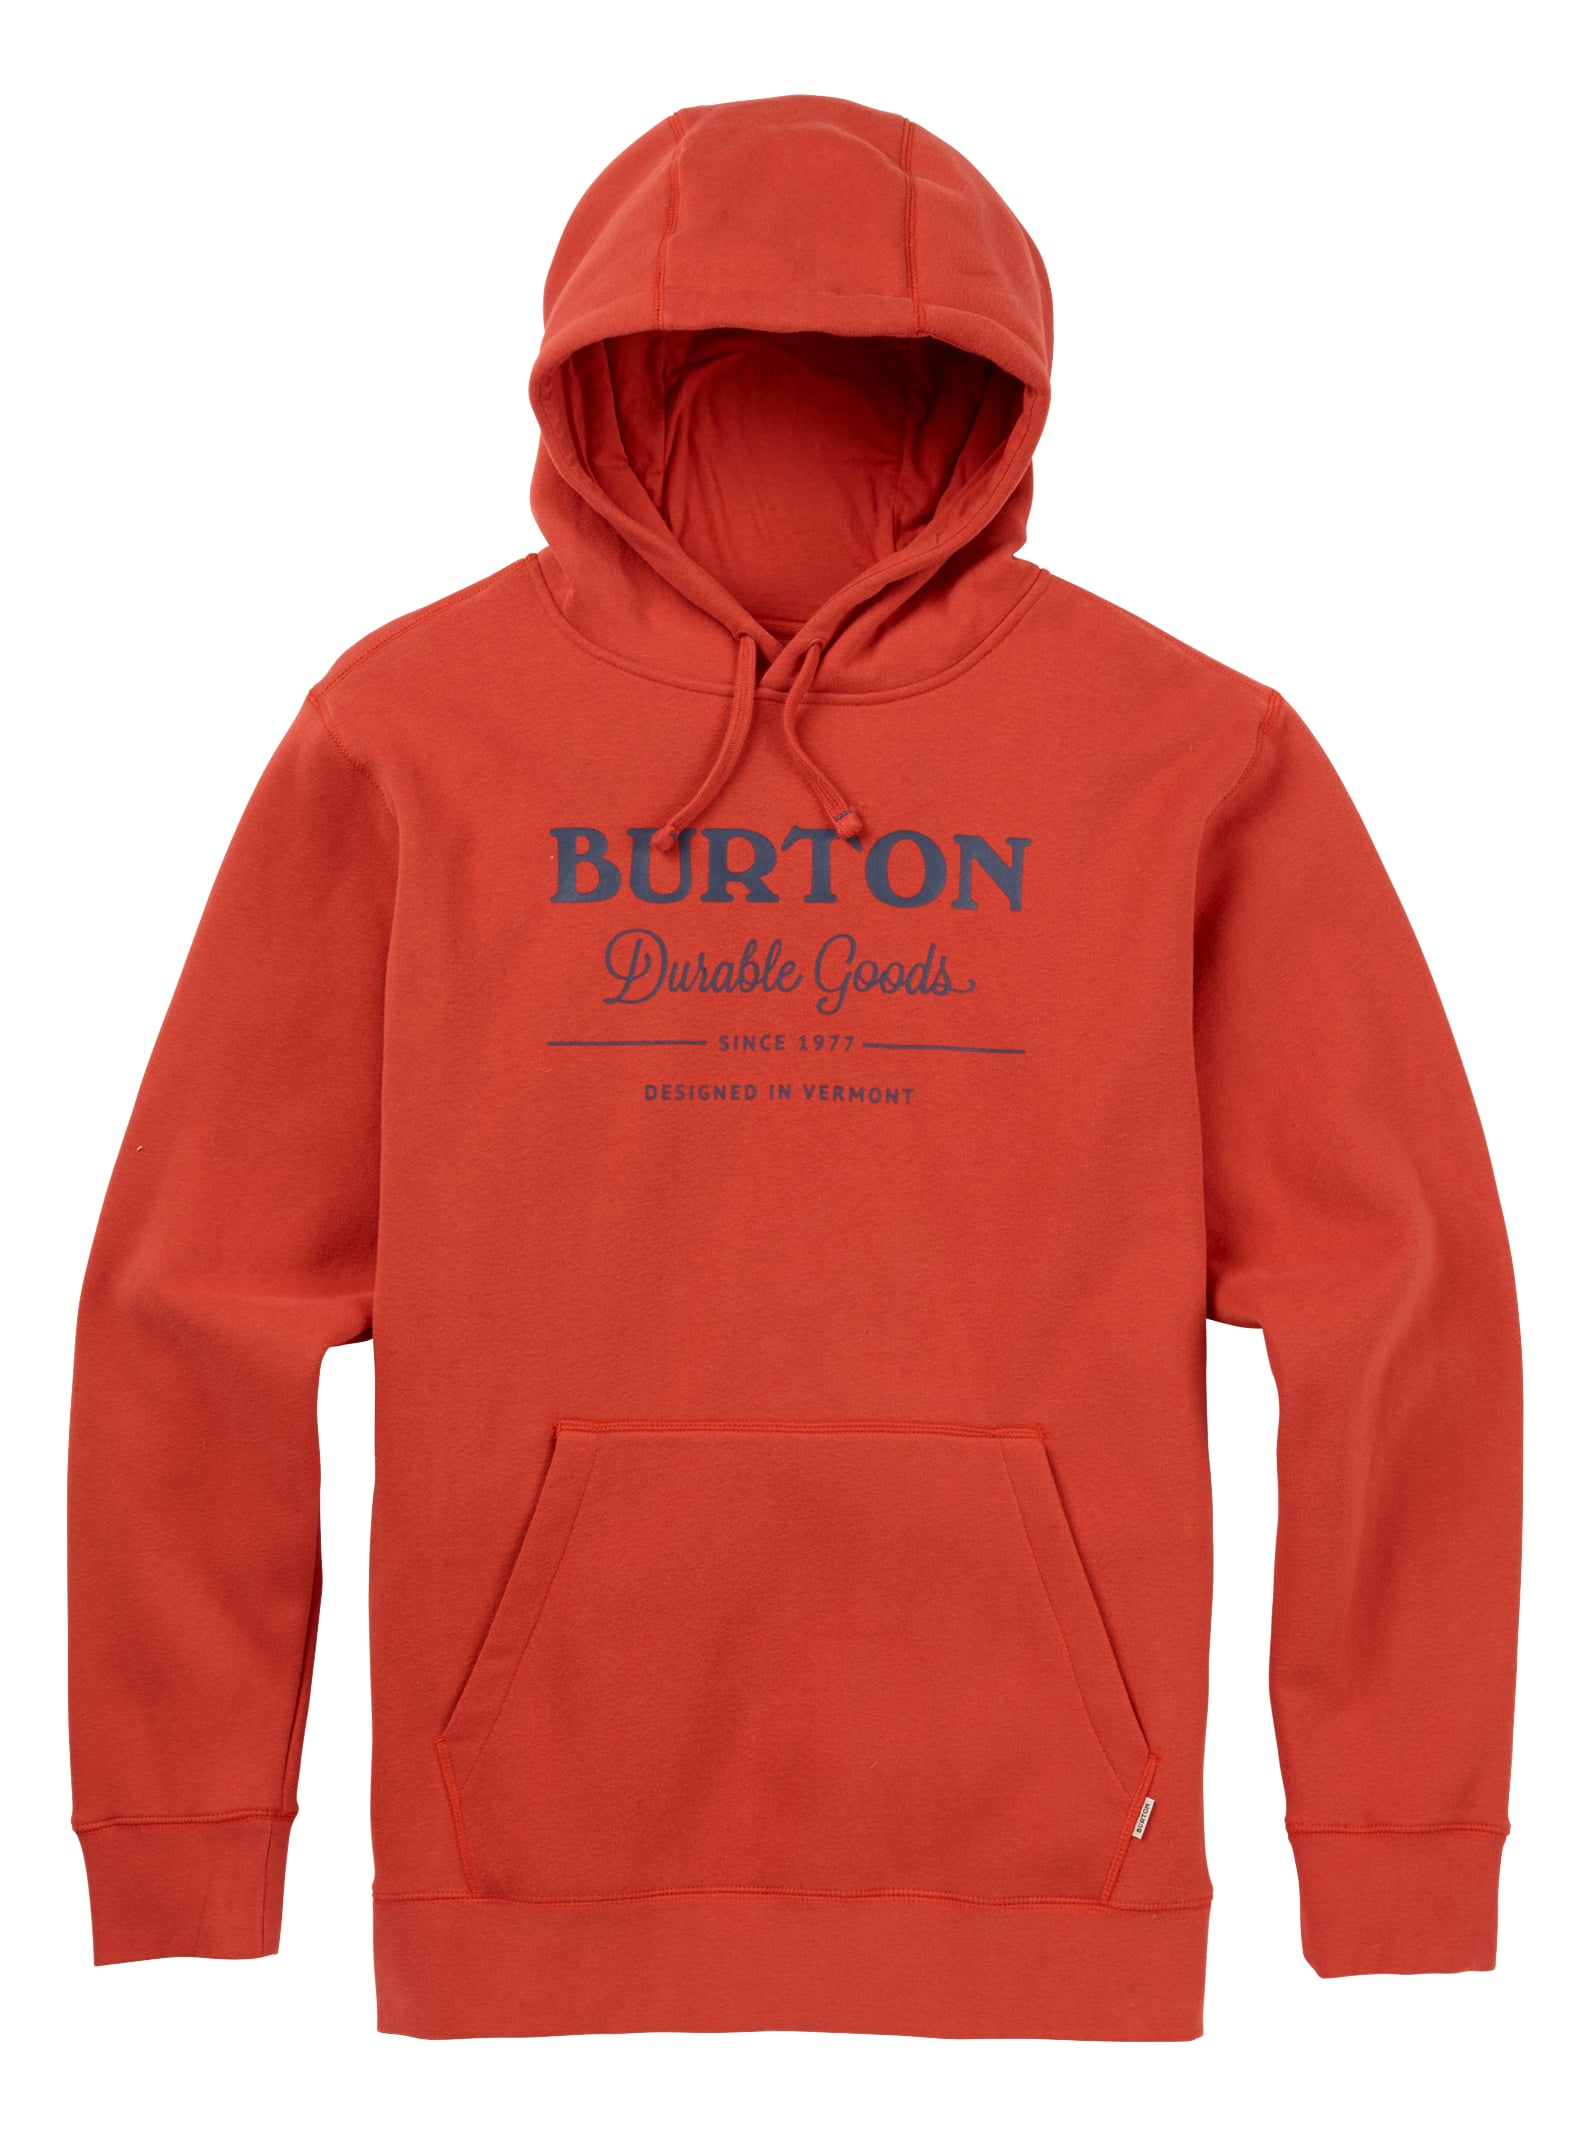 Burton / Men's Durable Goods Pullover Hoodie